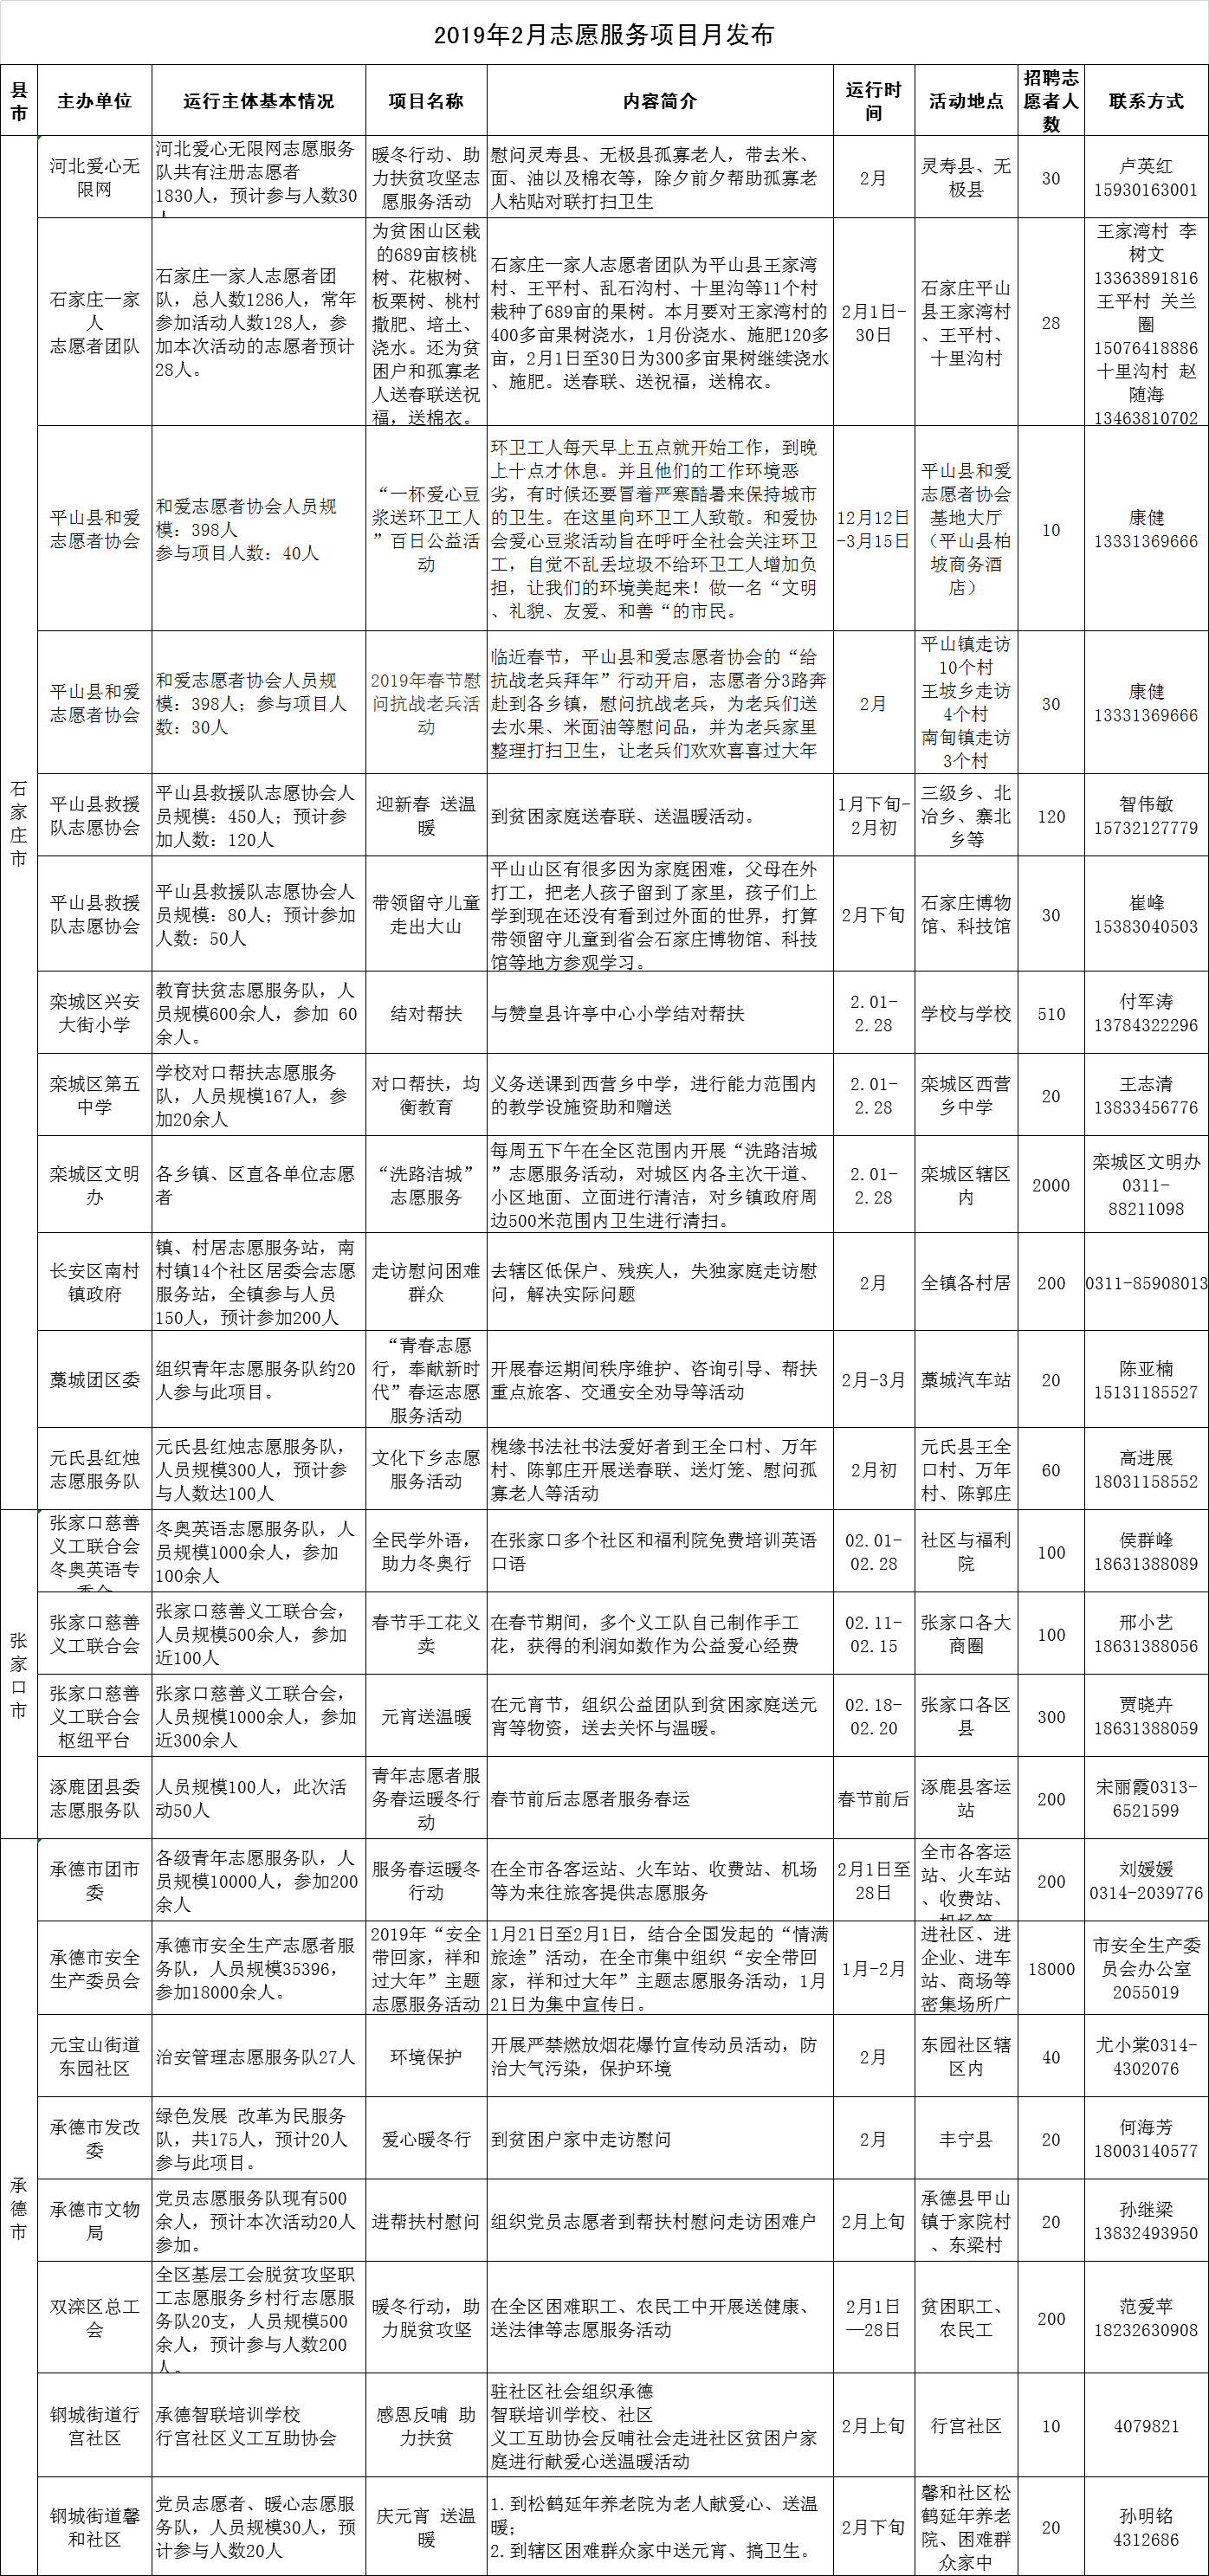 河北省文明办发布2019年2月志愿服务项目